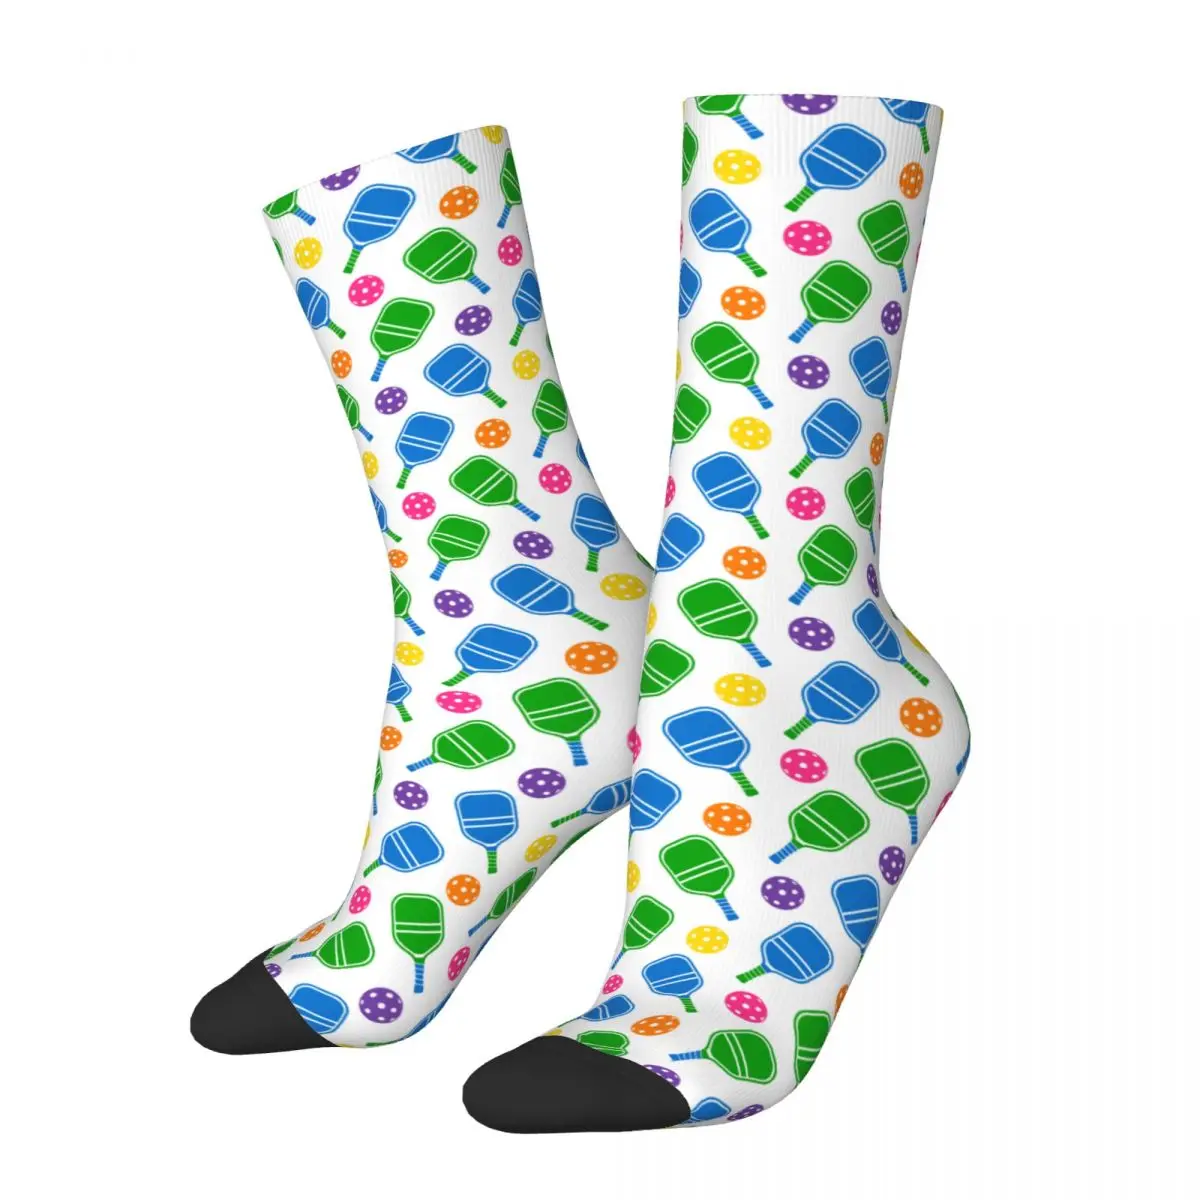 

Pickleball Green Blue Rackets Balls Design All Season Socks Merch for Female Male Cozy Printing Socks